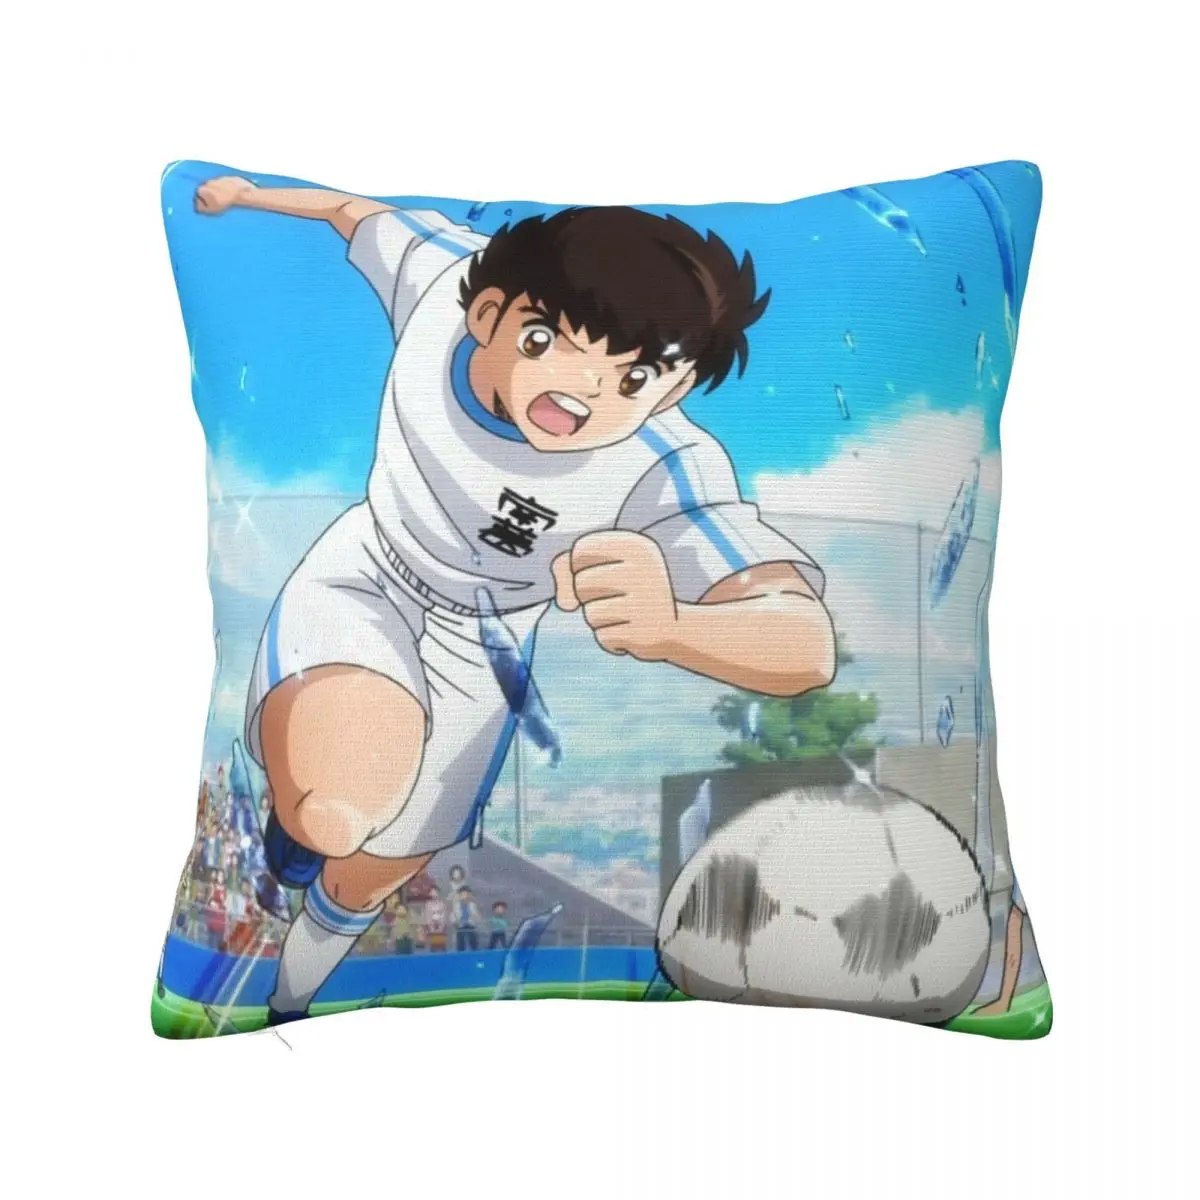 

Captain Tsubasa Anime Pillowcase Print Polyester Cushion Cover cartoon young football player Throw Pillow Case Cover Home 45cm